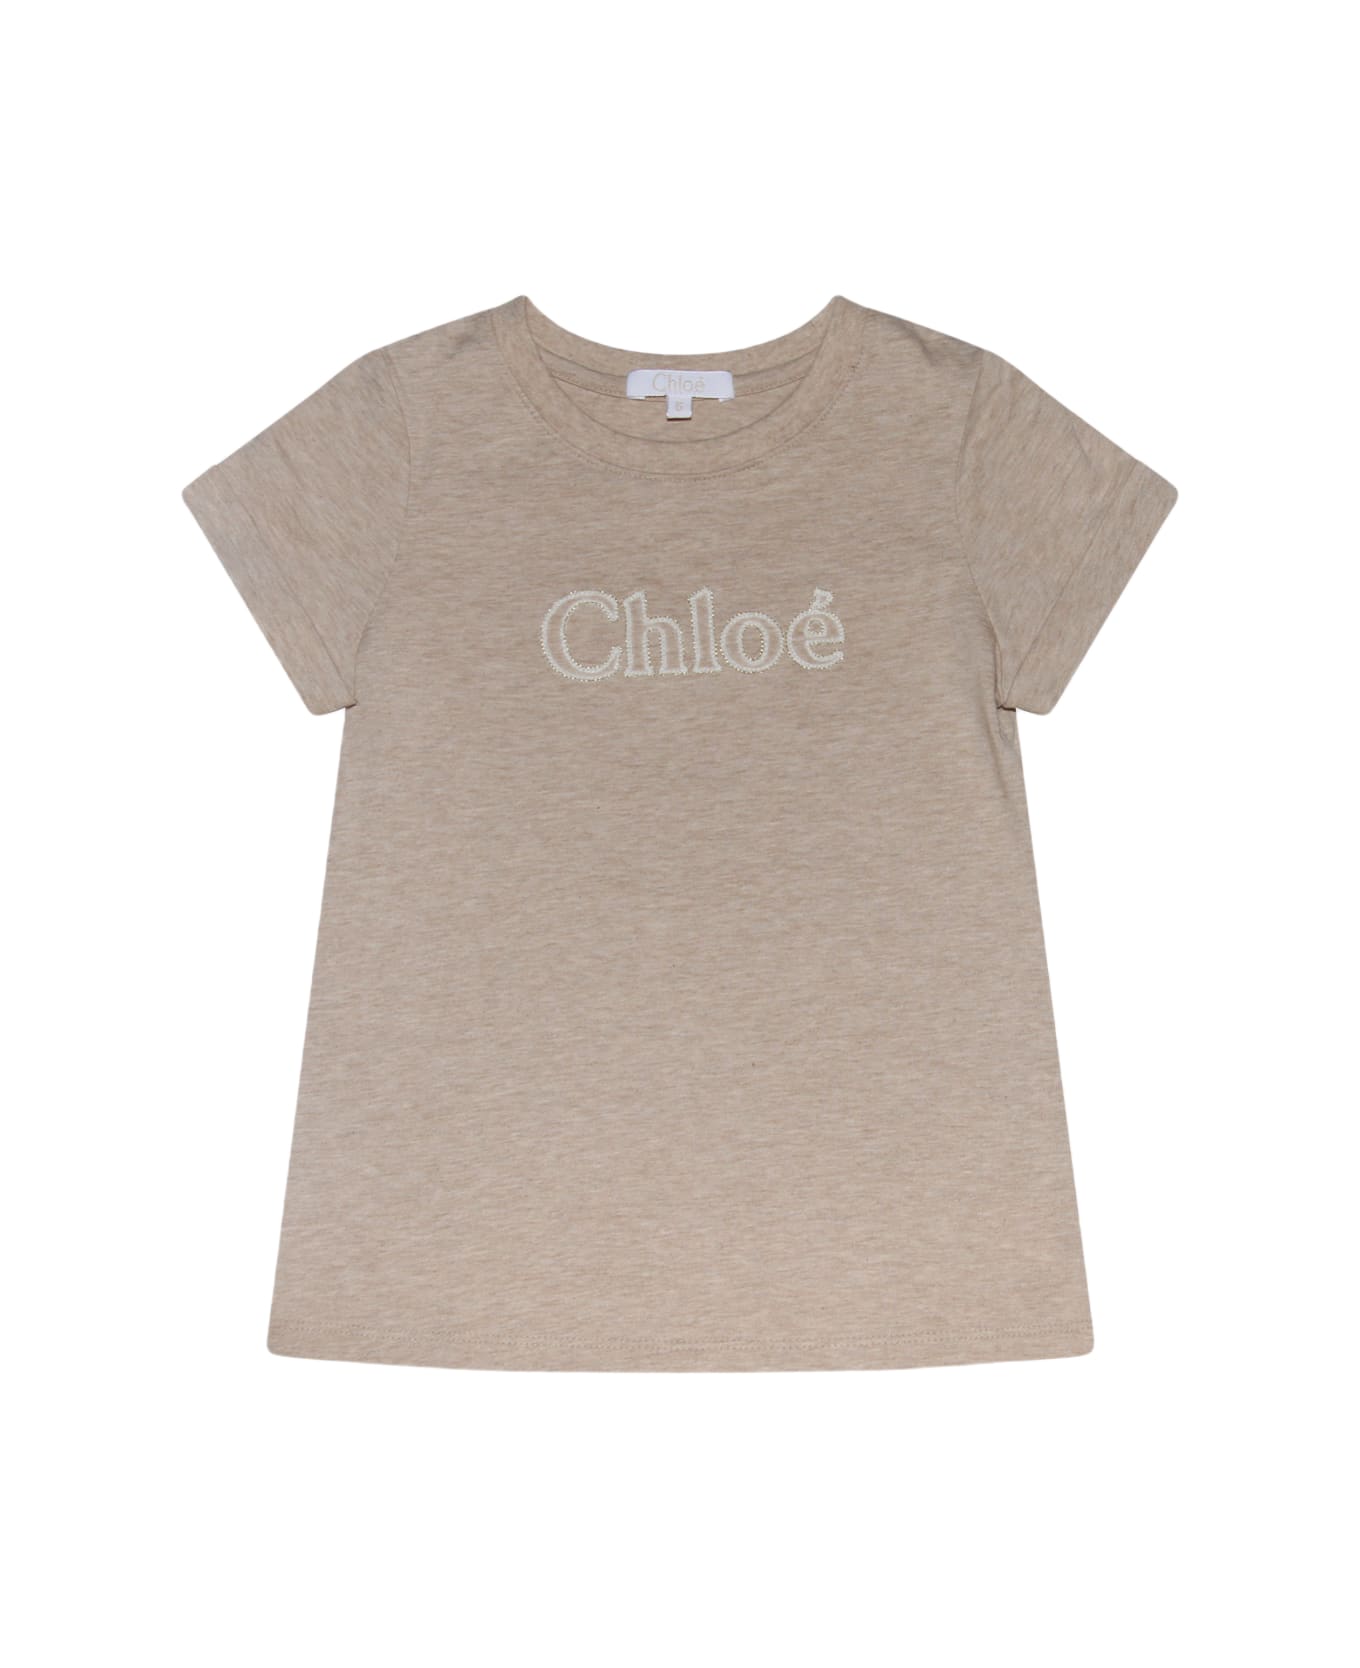 Chloé Beige Cotton T-shirt - BEIGE ANTICO